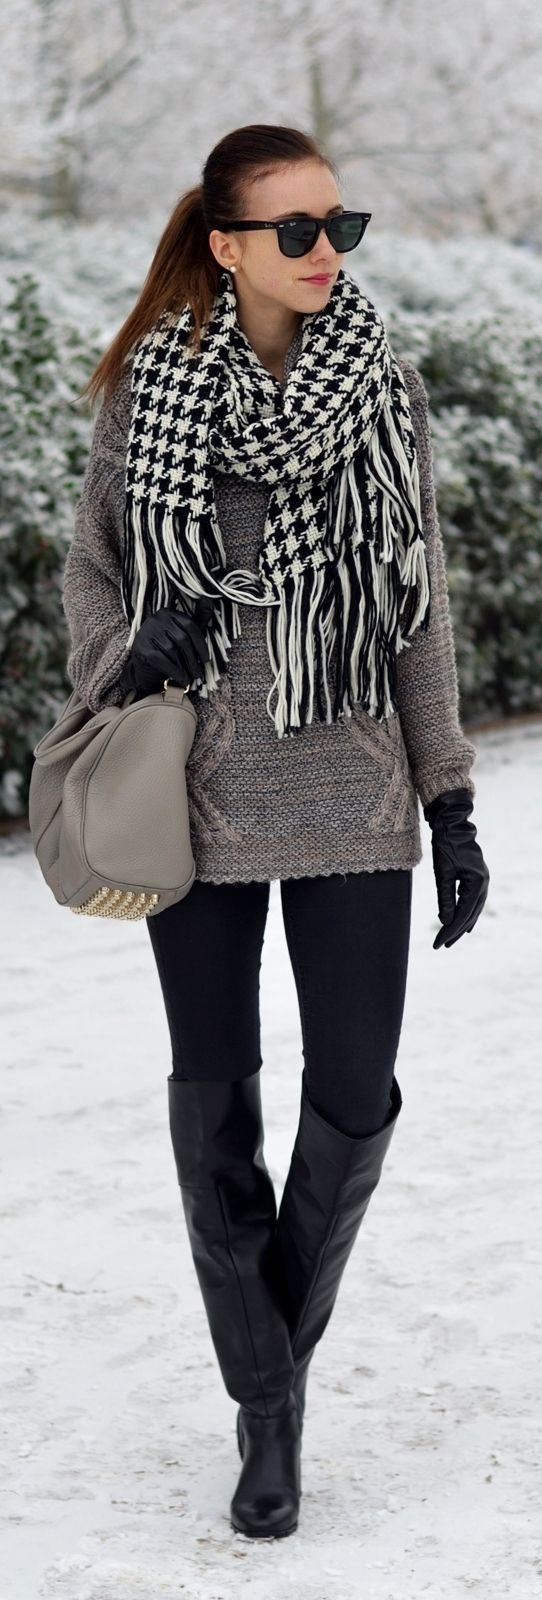 Trajes de invierno negros y grises.: trajes de invierno,  Atuendos Con Botas,  Trajes De Bufandas  